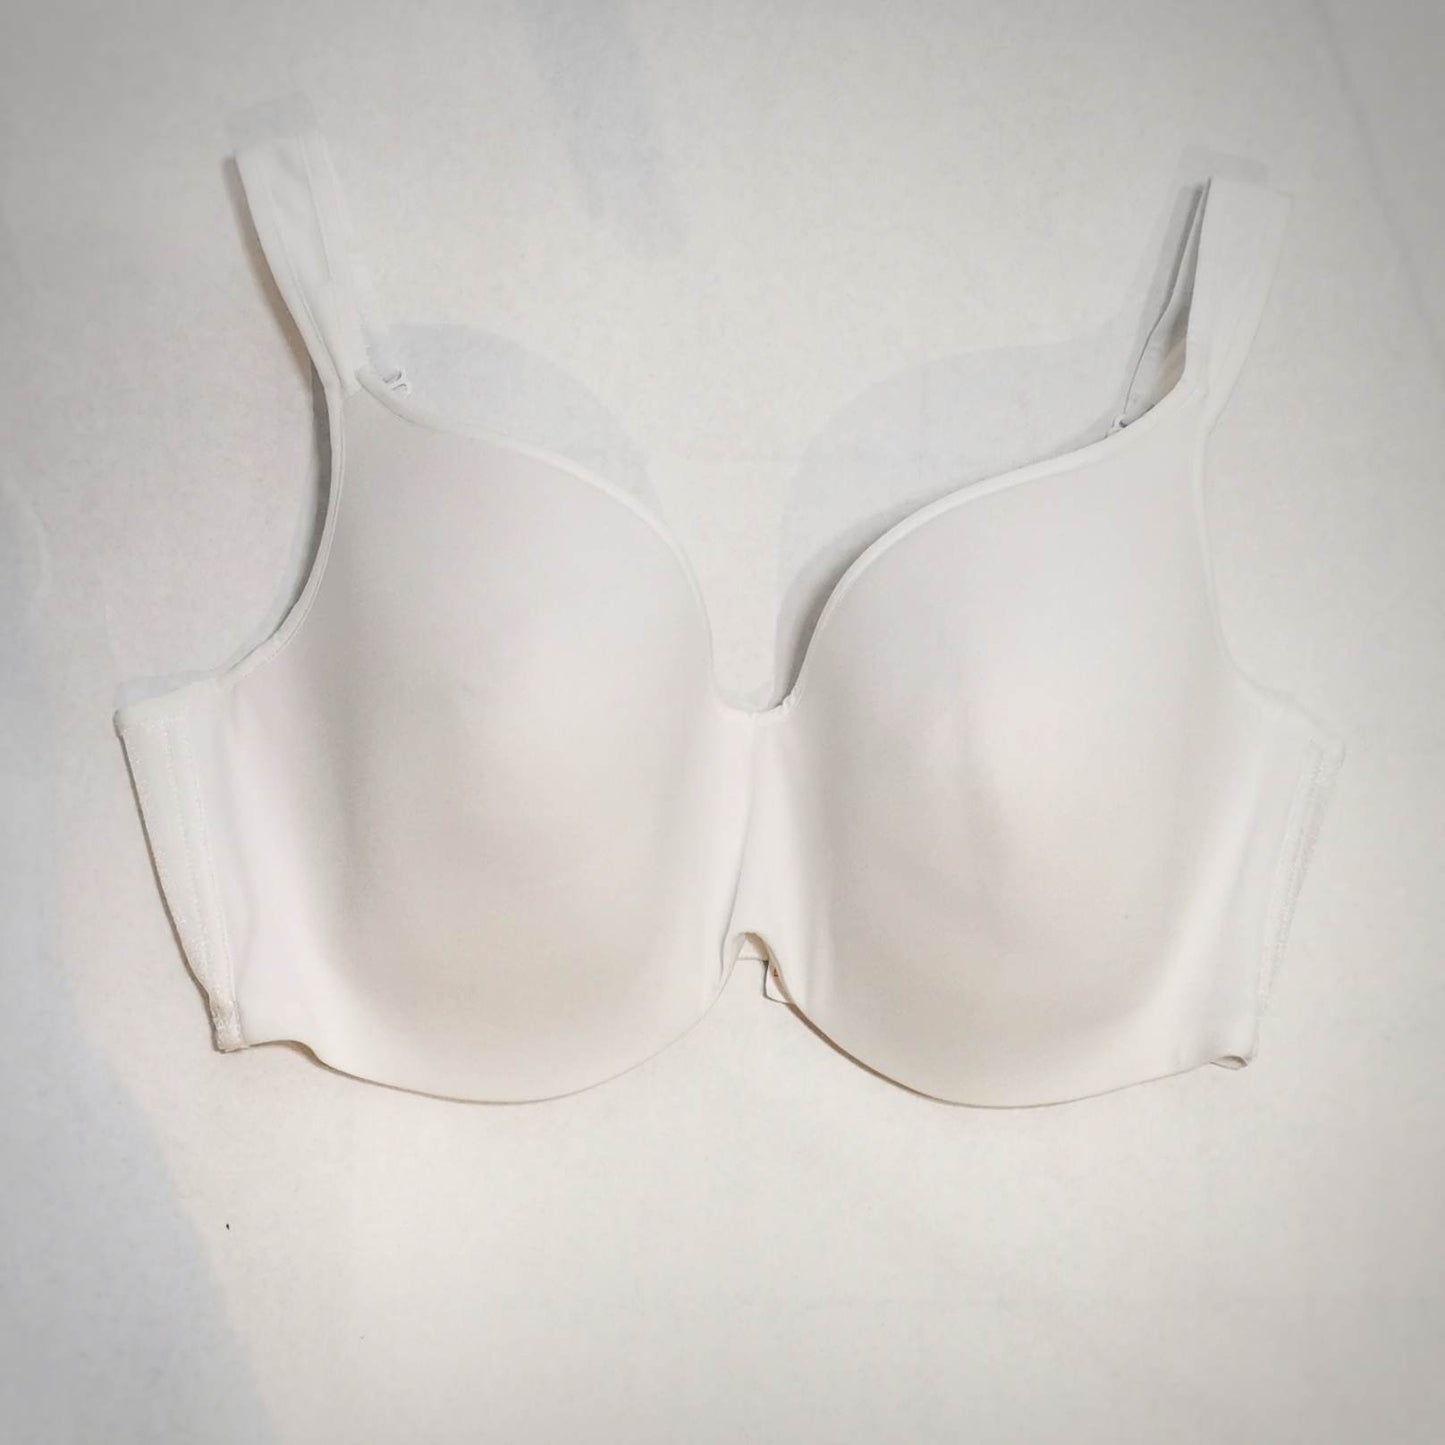 Plain white bra